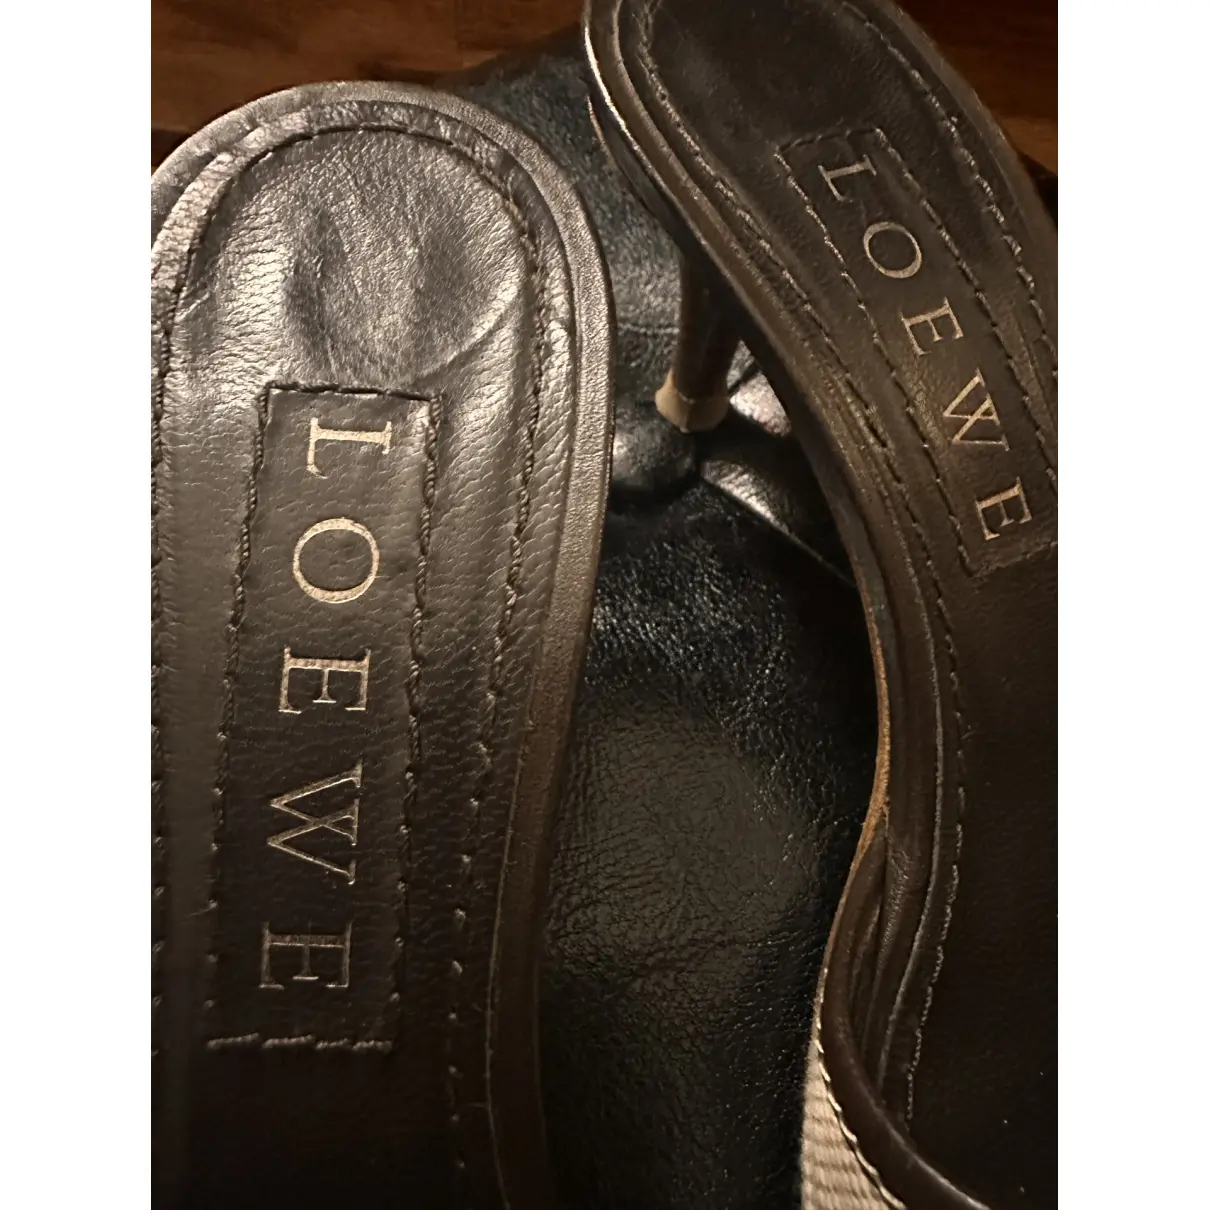 Buy Loewe Leather mules & clogs online